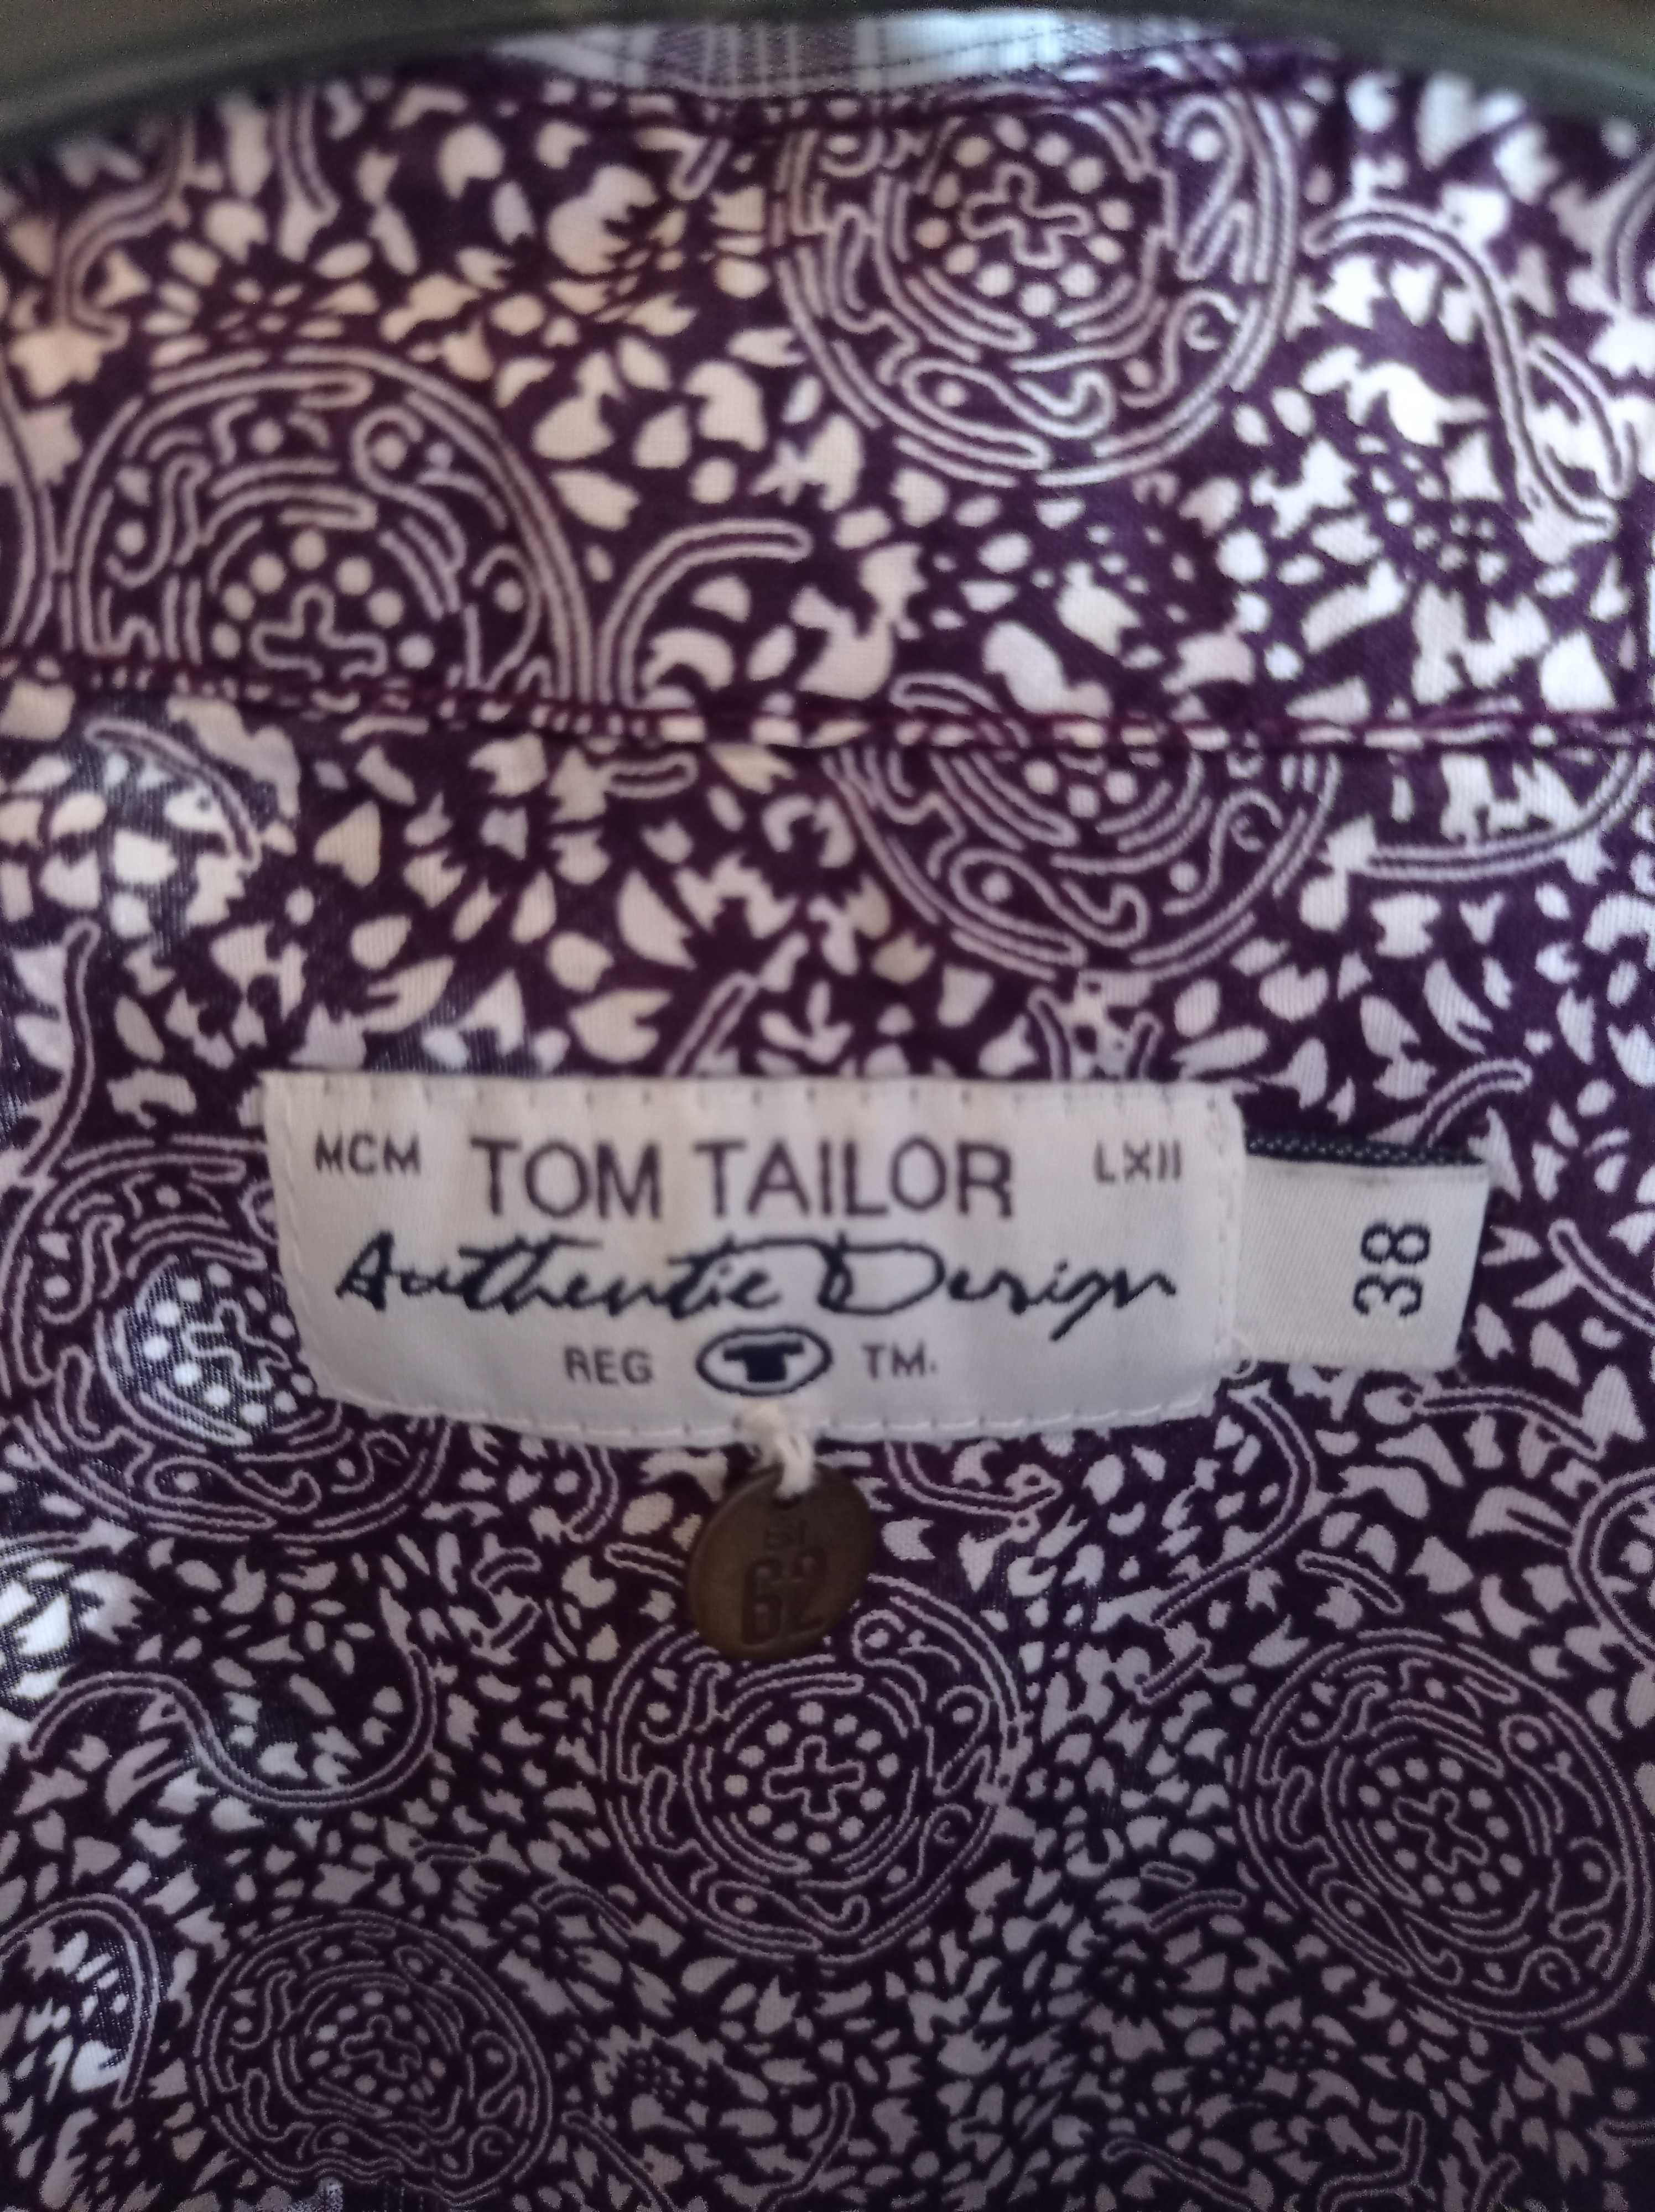 Карирана риза Tom Taylor в лилаво и бяло, размер 38, без забележки